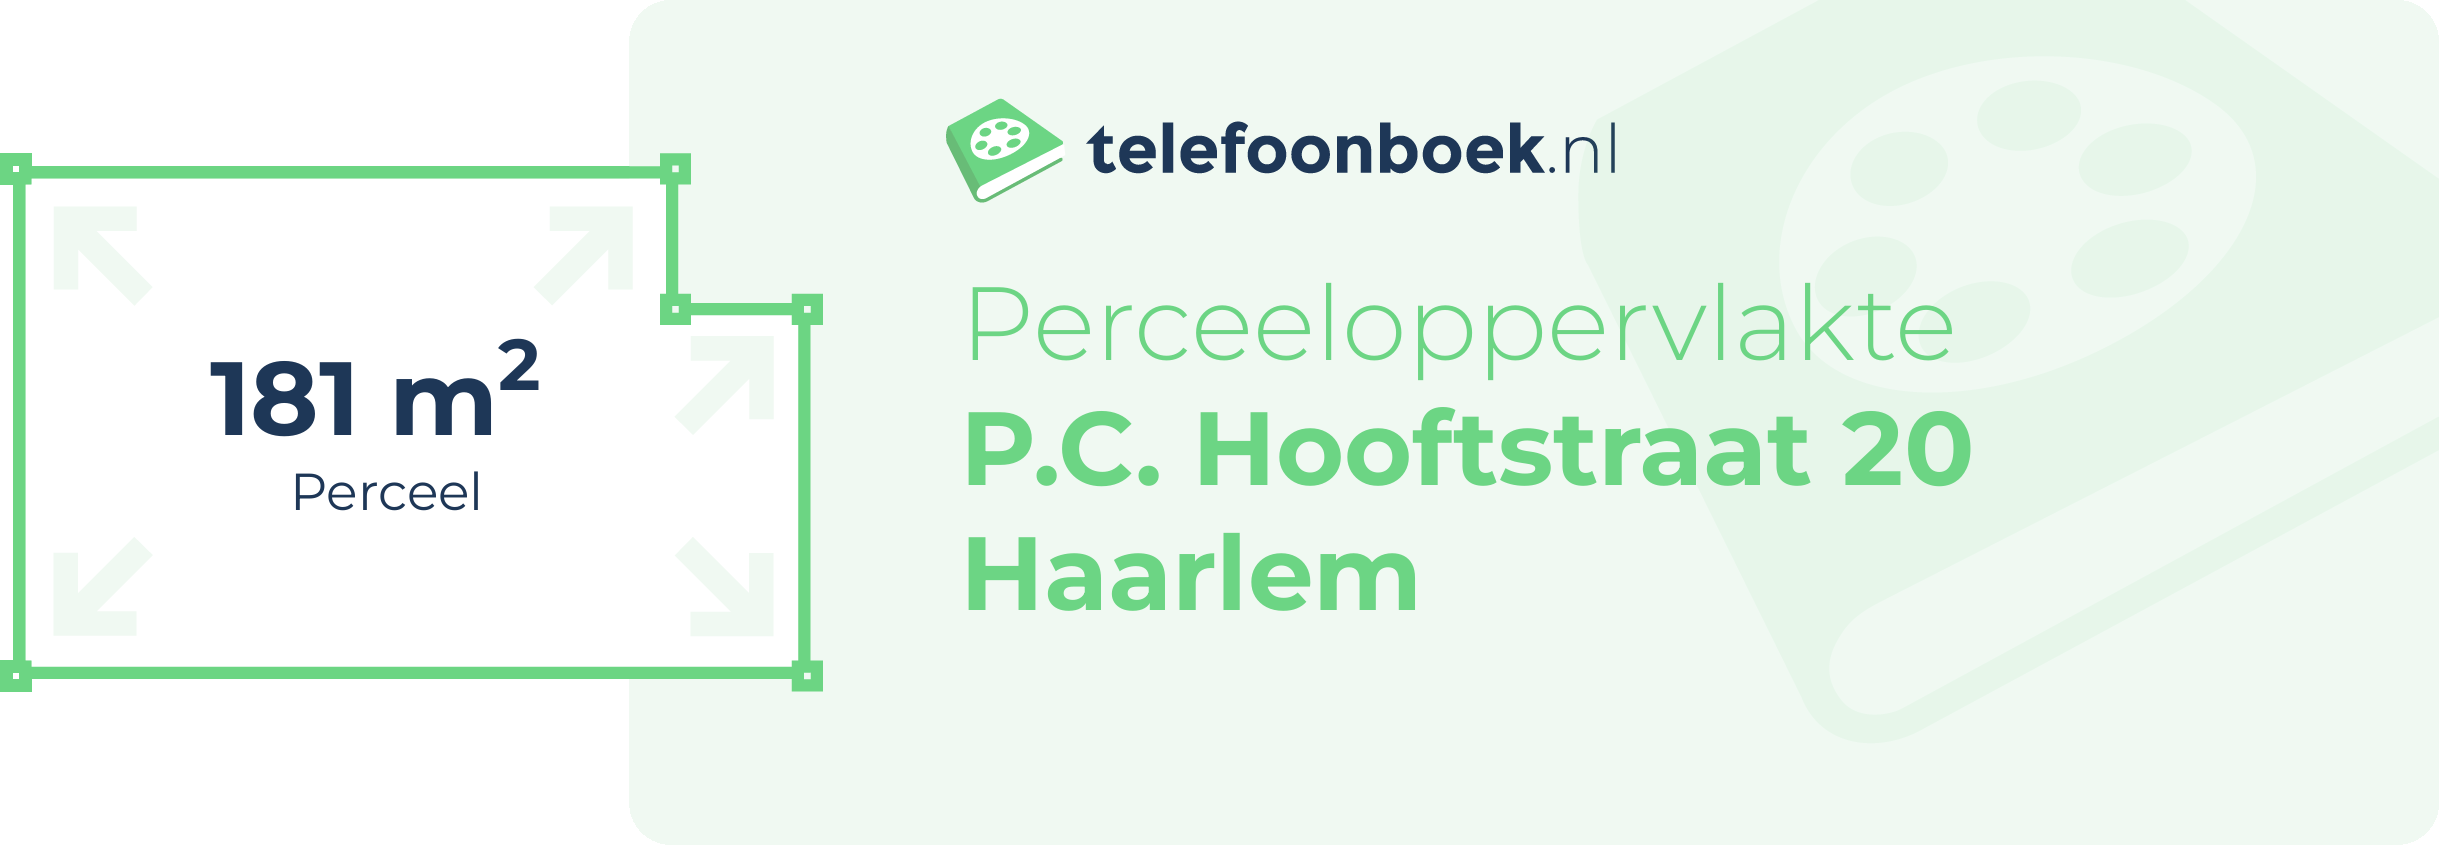 Perceeloppervlakte P.C. Hooftstraat 20 Haarlem